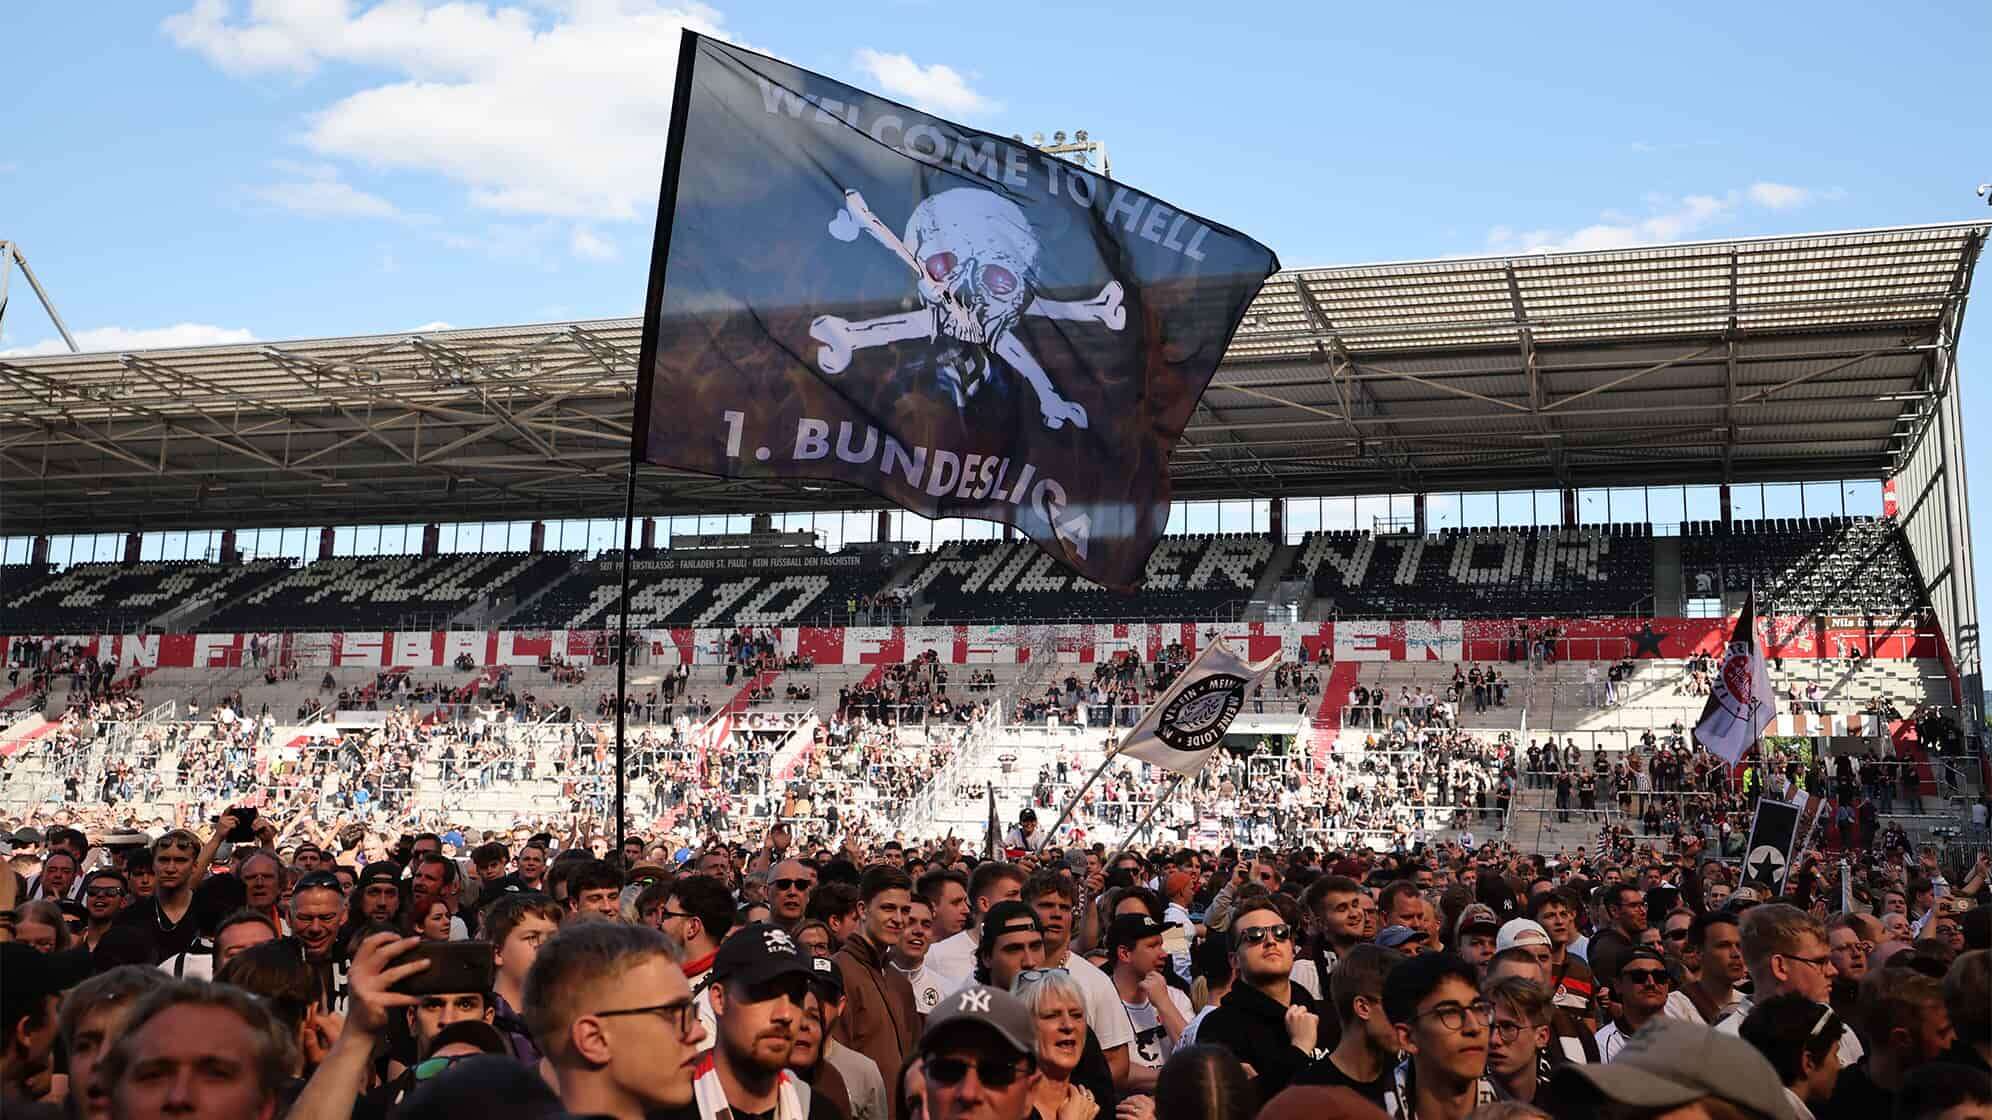 Bild von der feiernden Menge auf der Rasenfläche des Millerntorstadions nach dem Aufstieg des FC St, Pauli in die erste Fußball Bundesliga